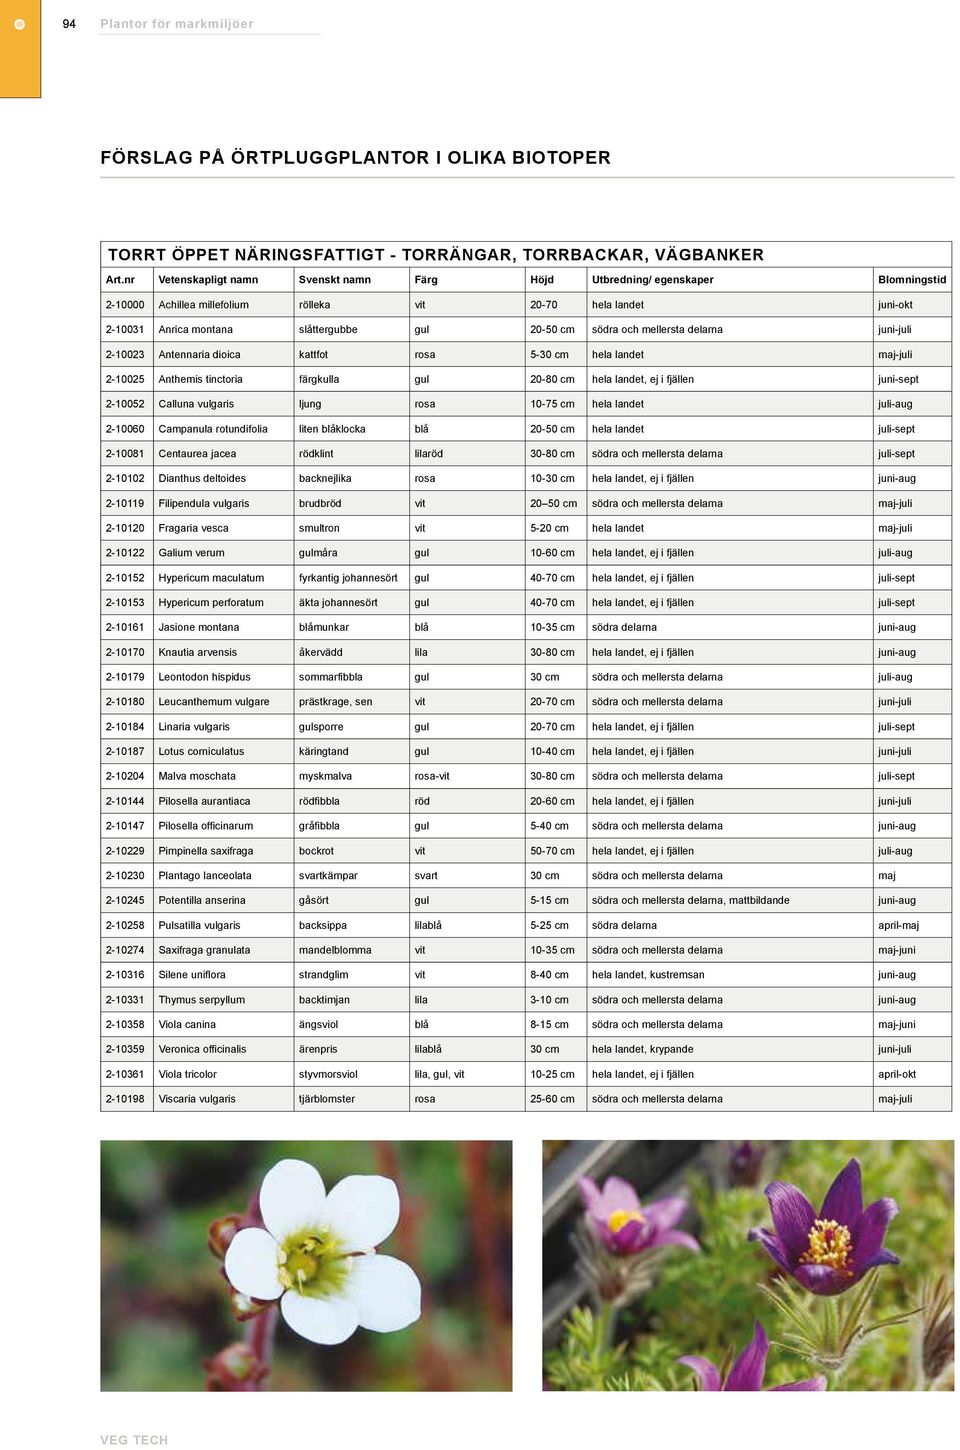 fjällen juni-sept 2-10052 Calluna vulgaris ljung rosa 10-75 cm hela landet juli-aug 2-10060 Campanula rotundifolia liten blåklocka blå 20-50 cm hela landet juli-sept 2-10081 Centaurea jacea rödklint